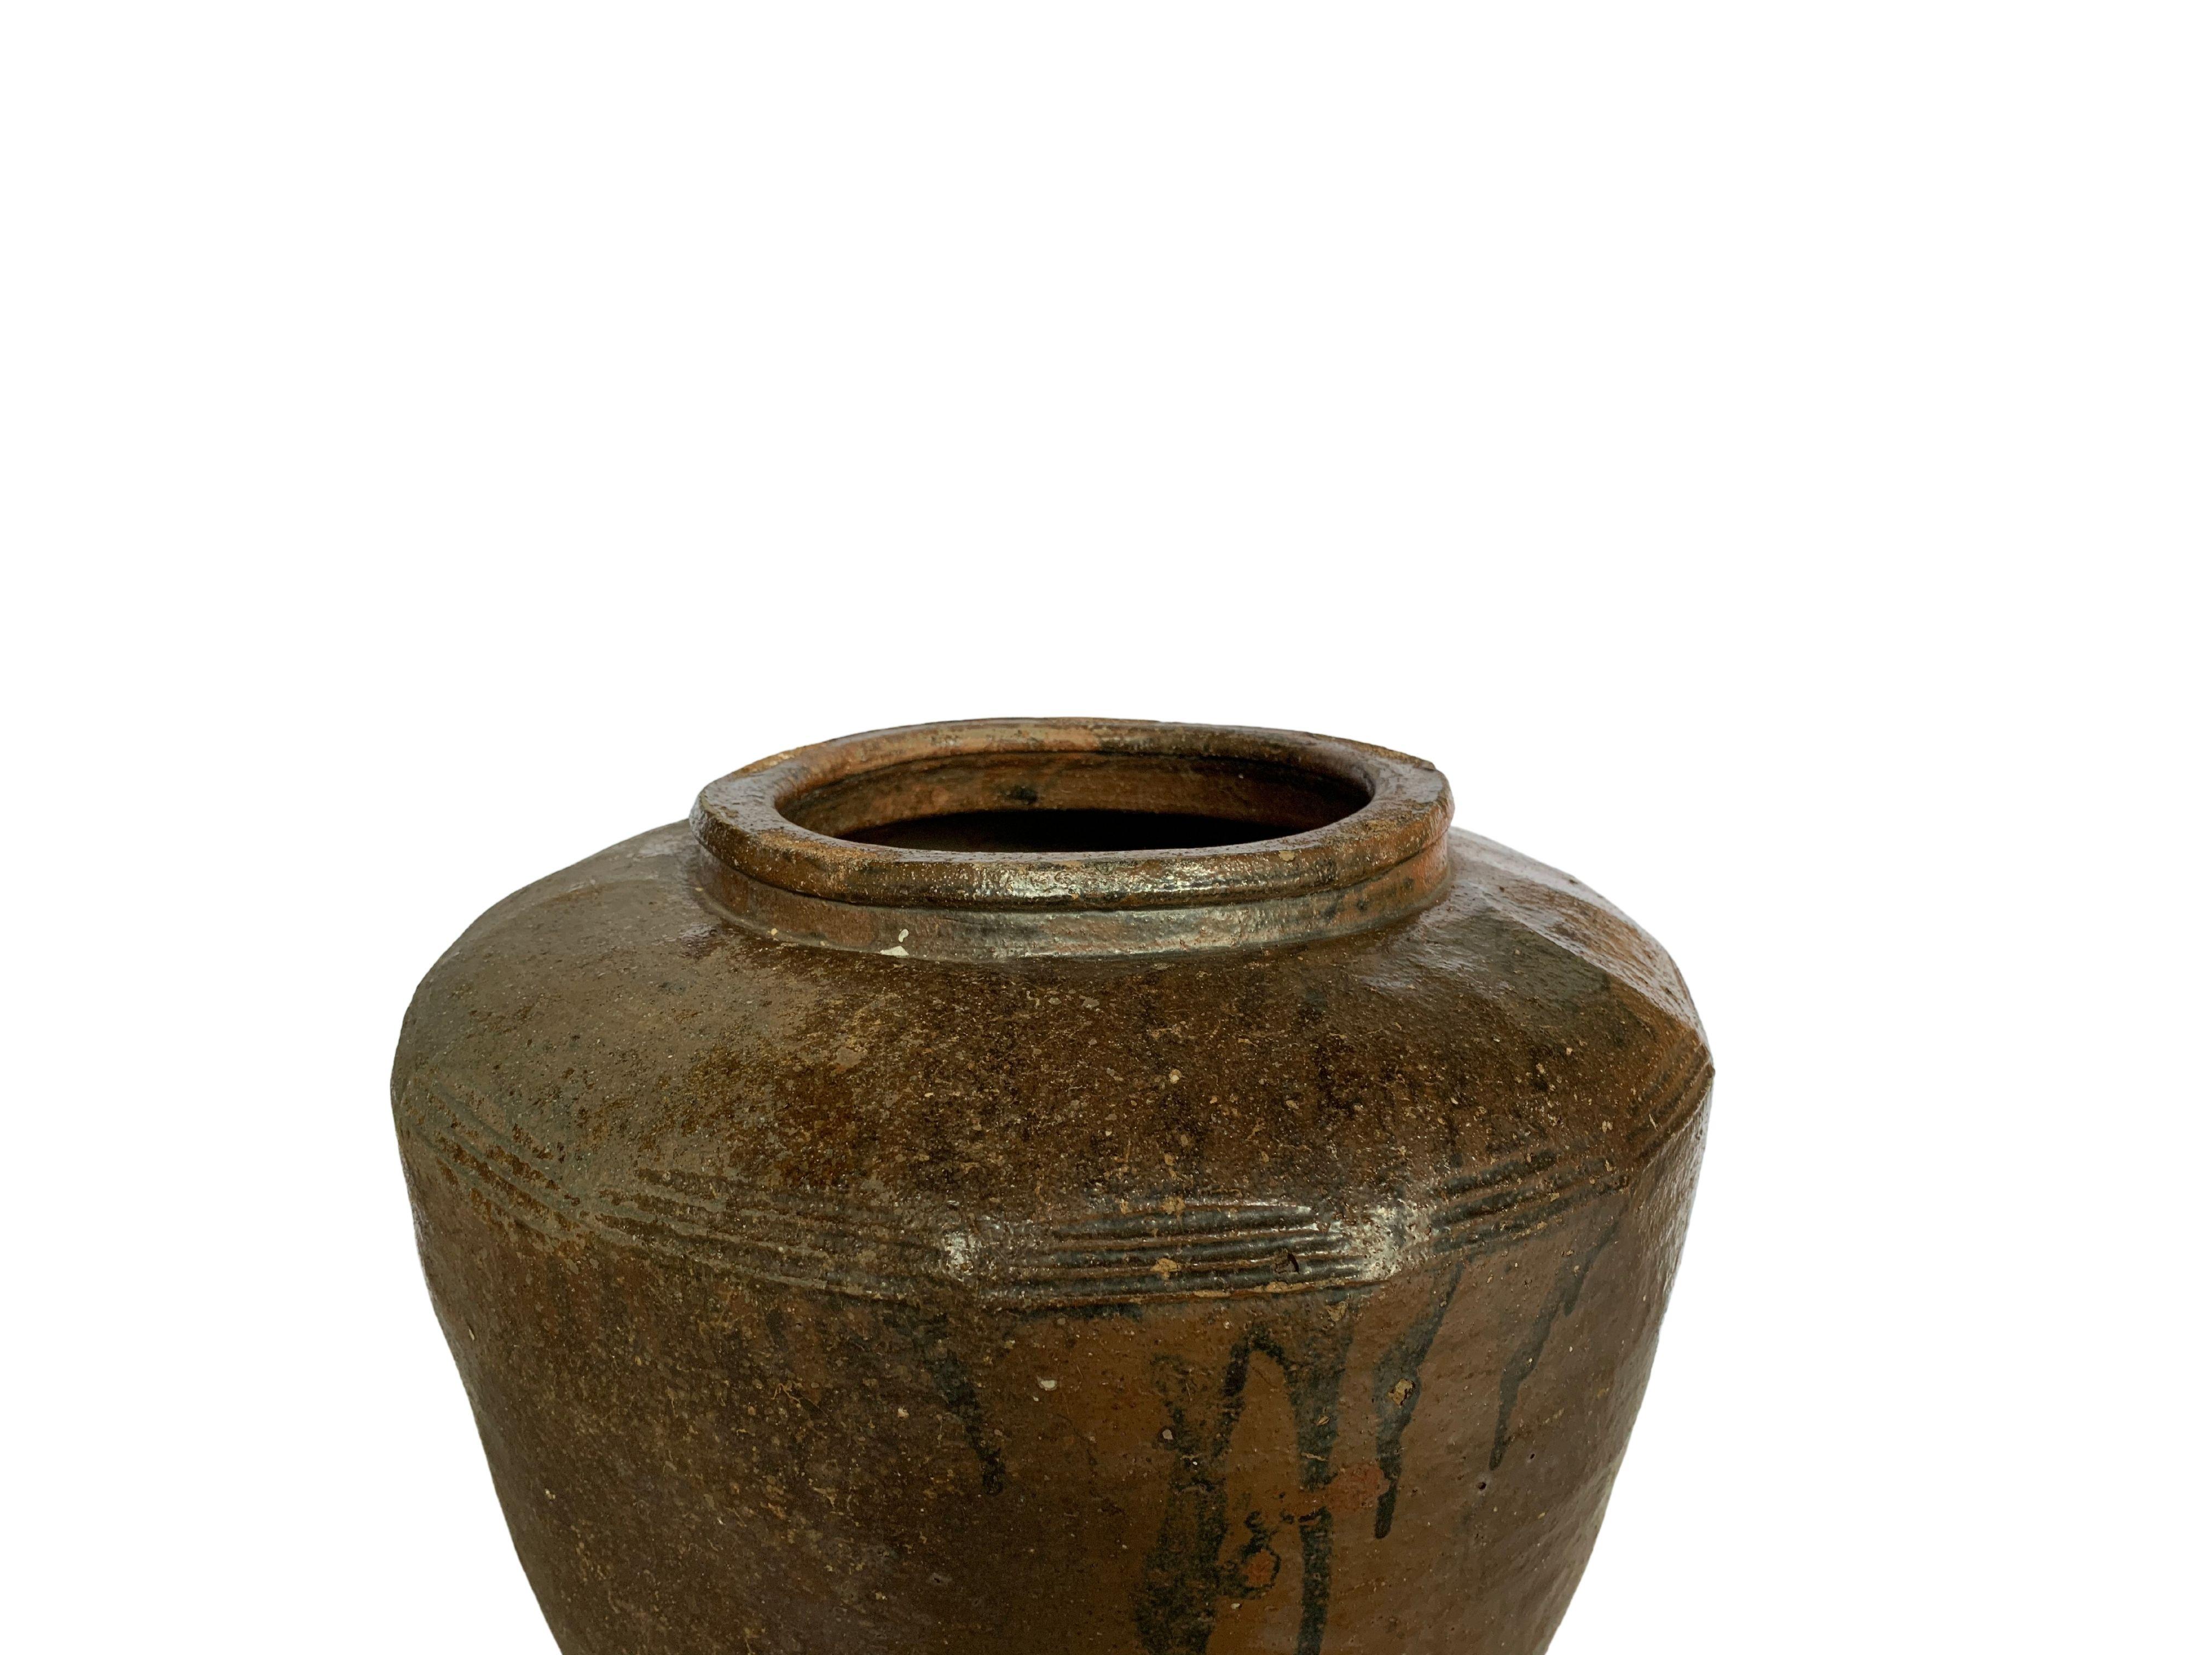 Antique Chinese Brown & Black Glazed Ceramic Salty Egg Jar, c. 1900 For Sale 5